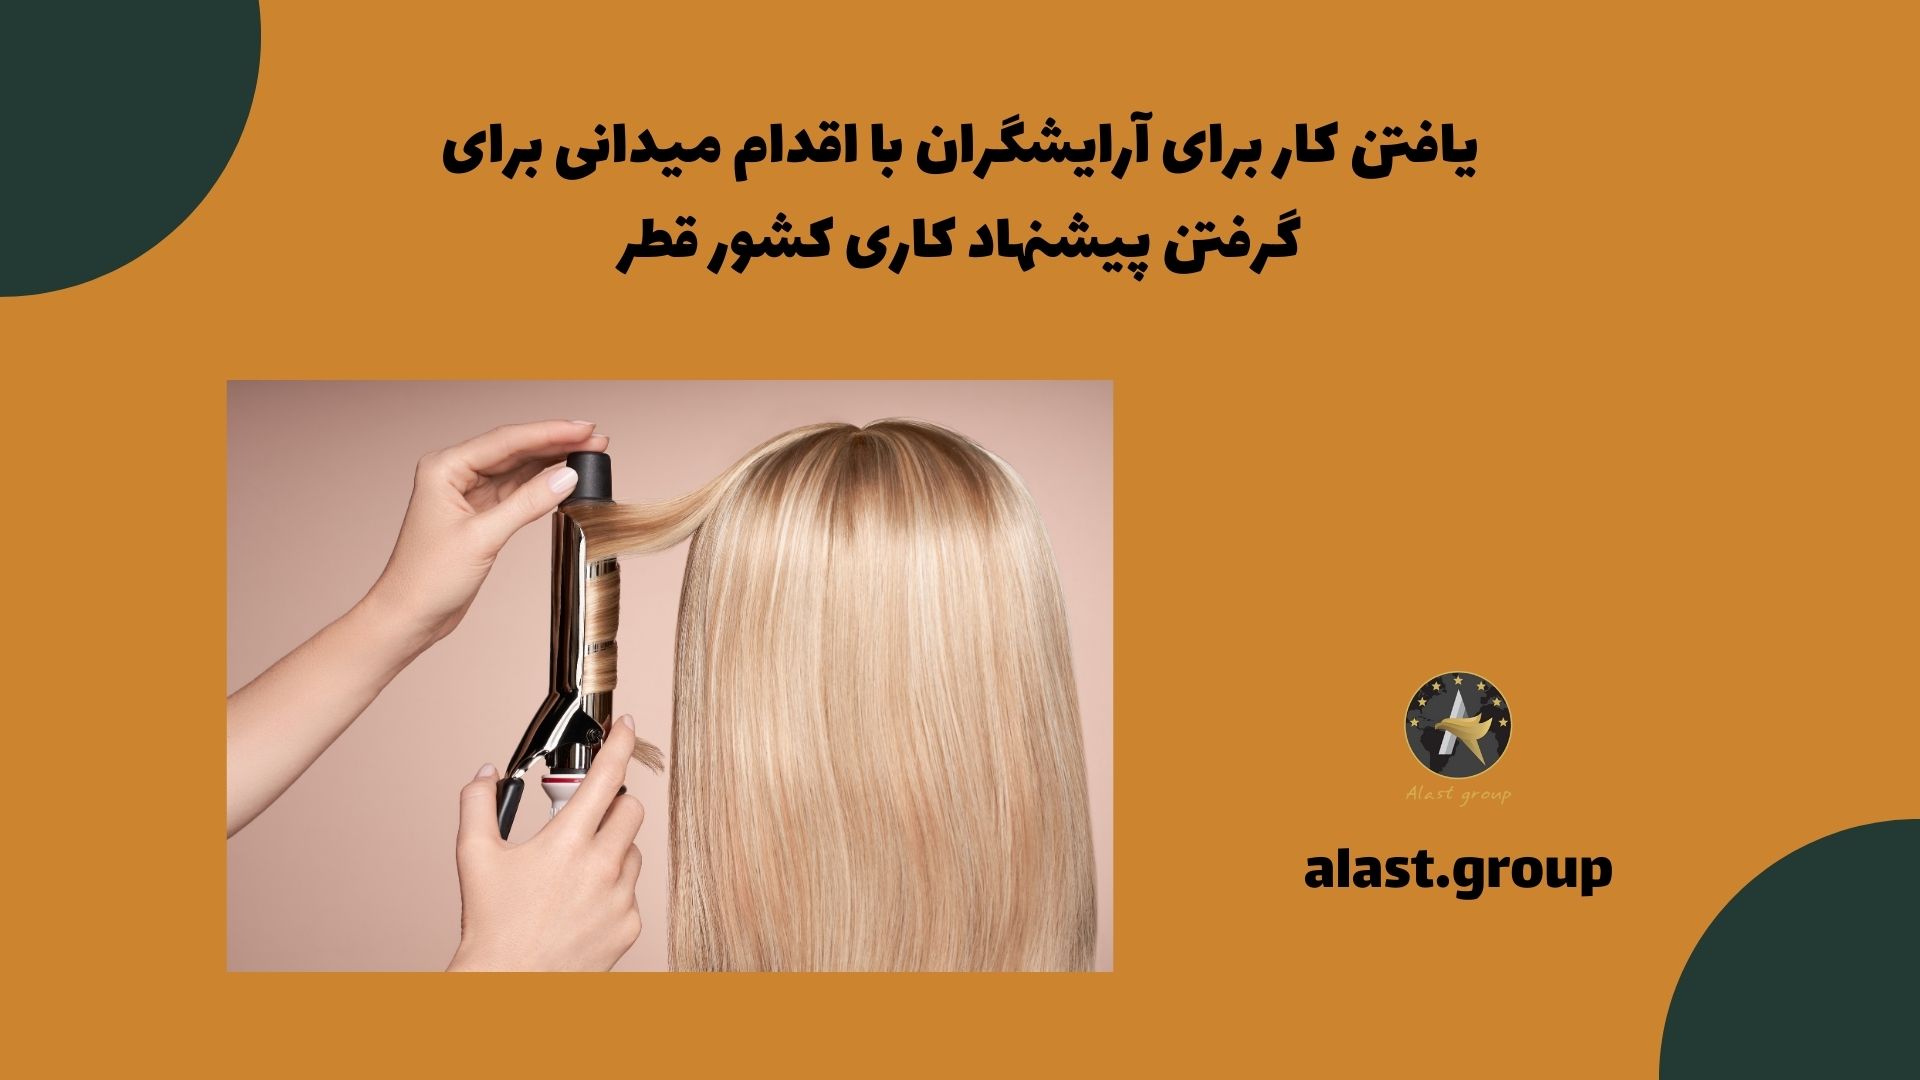 یافتن کار برای آرایشگران با اقدام میدانی برای گرفتن پیشنهاد کاری کشور قطر